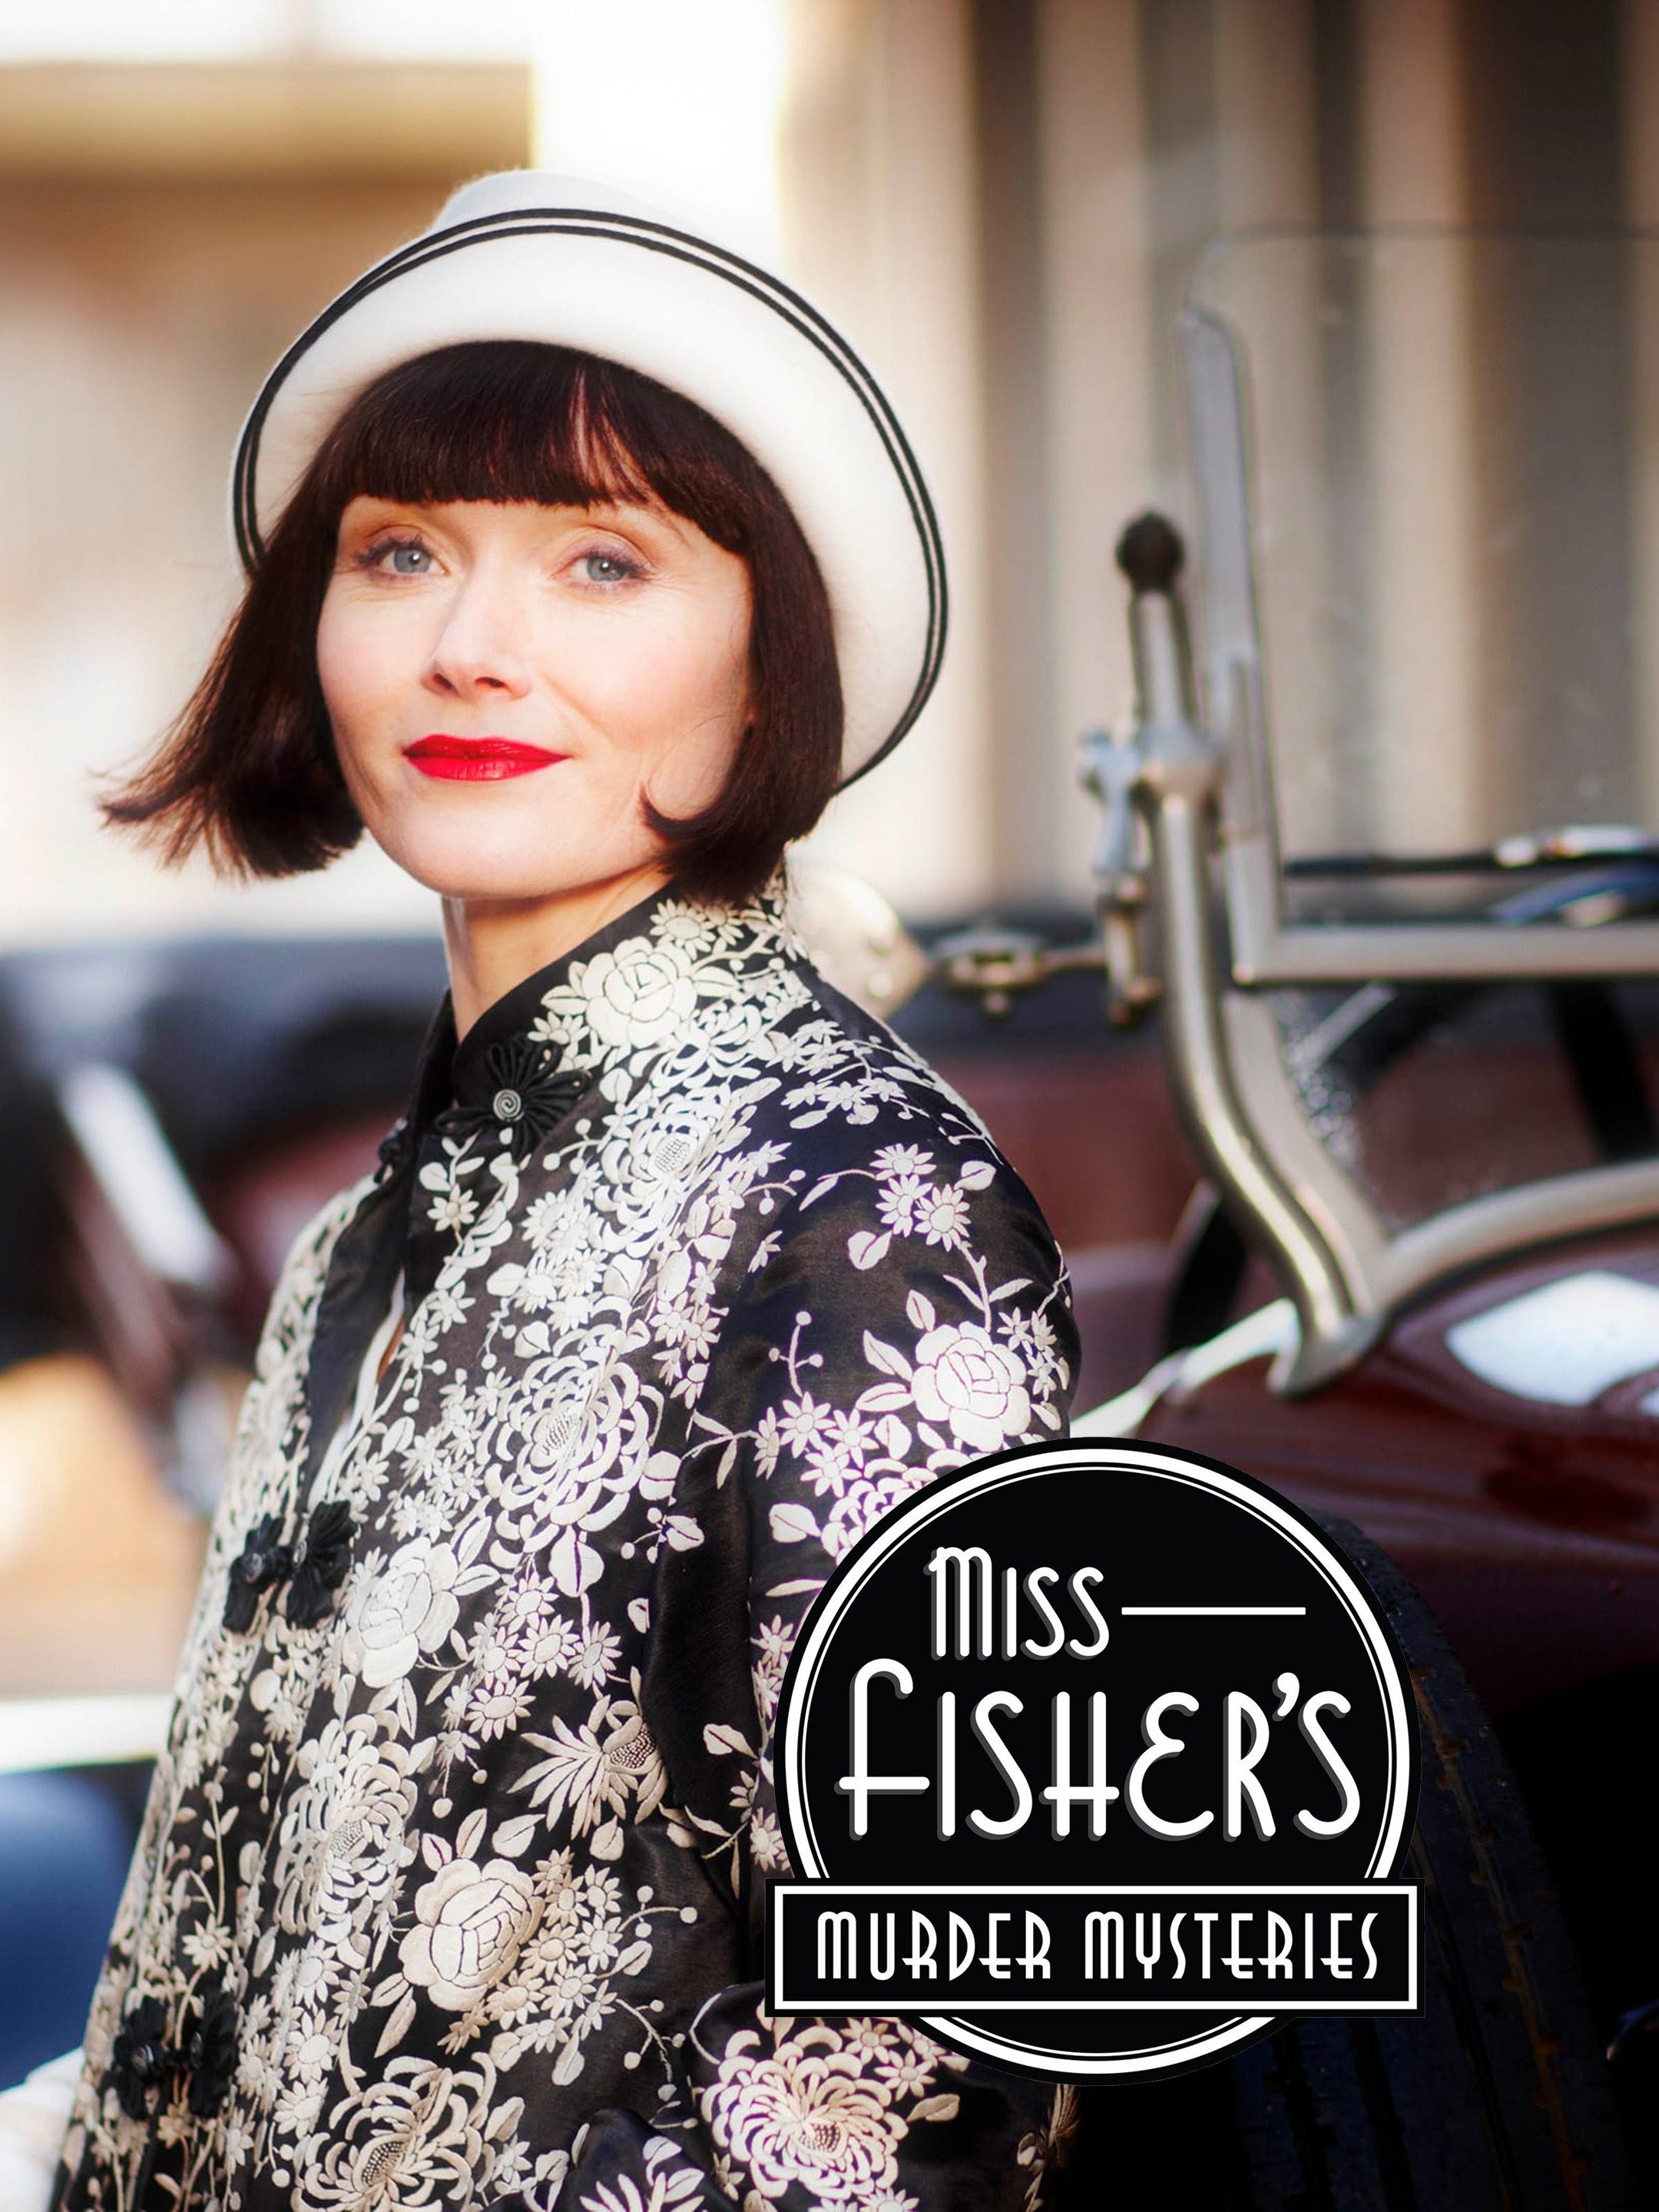 Miss Fisher's Murder Mysteries - Wikipedia